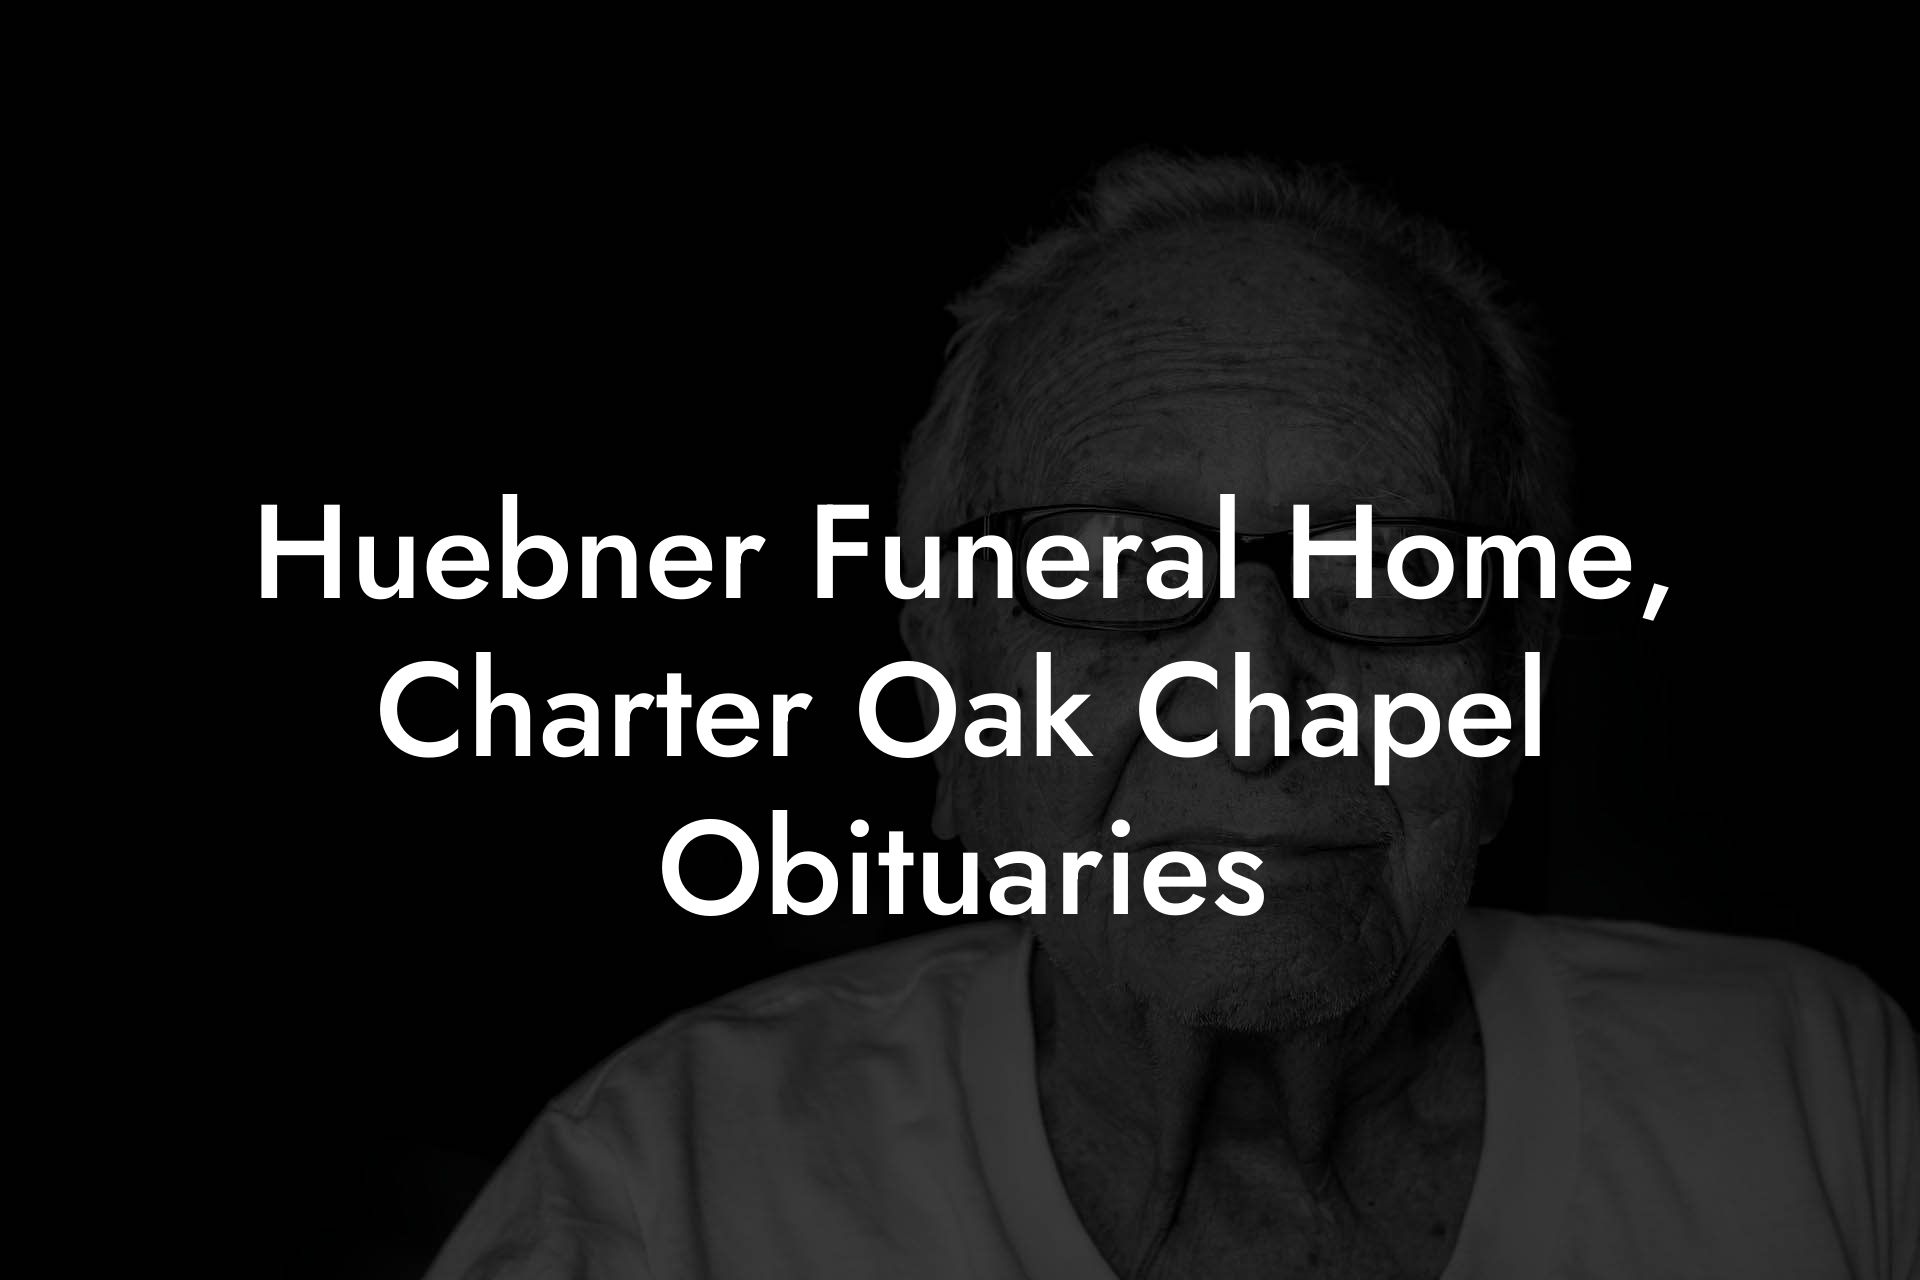 Huebner Funeral Home, Charter Oak Chapel Obituaries